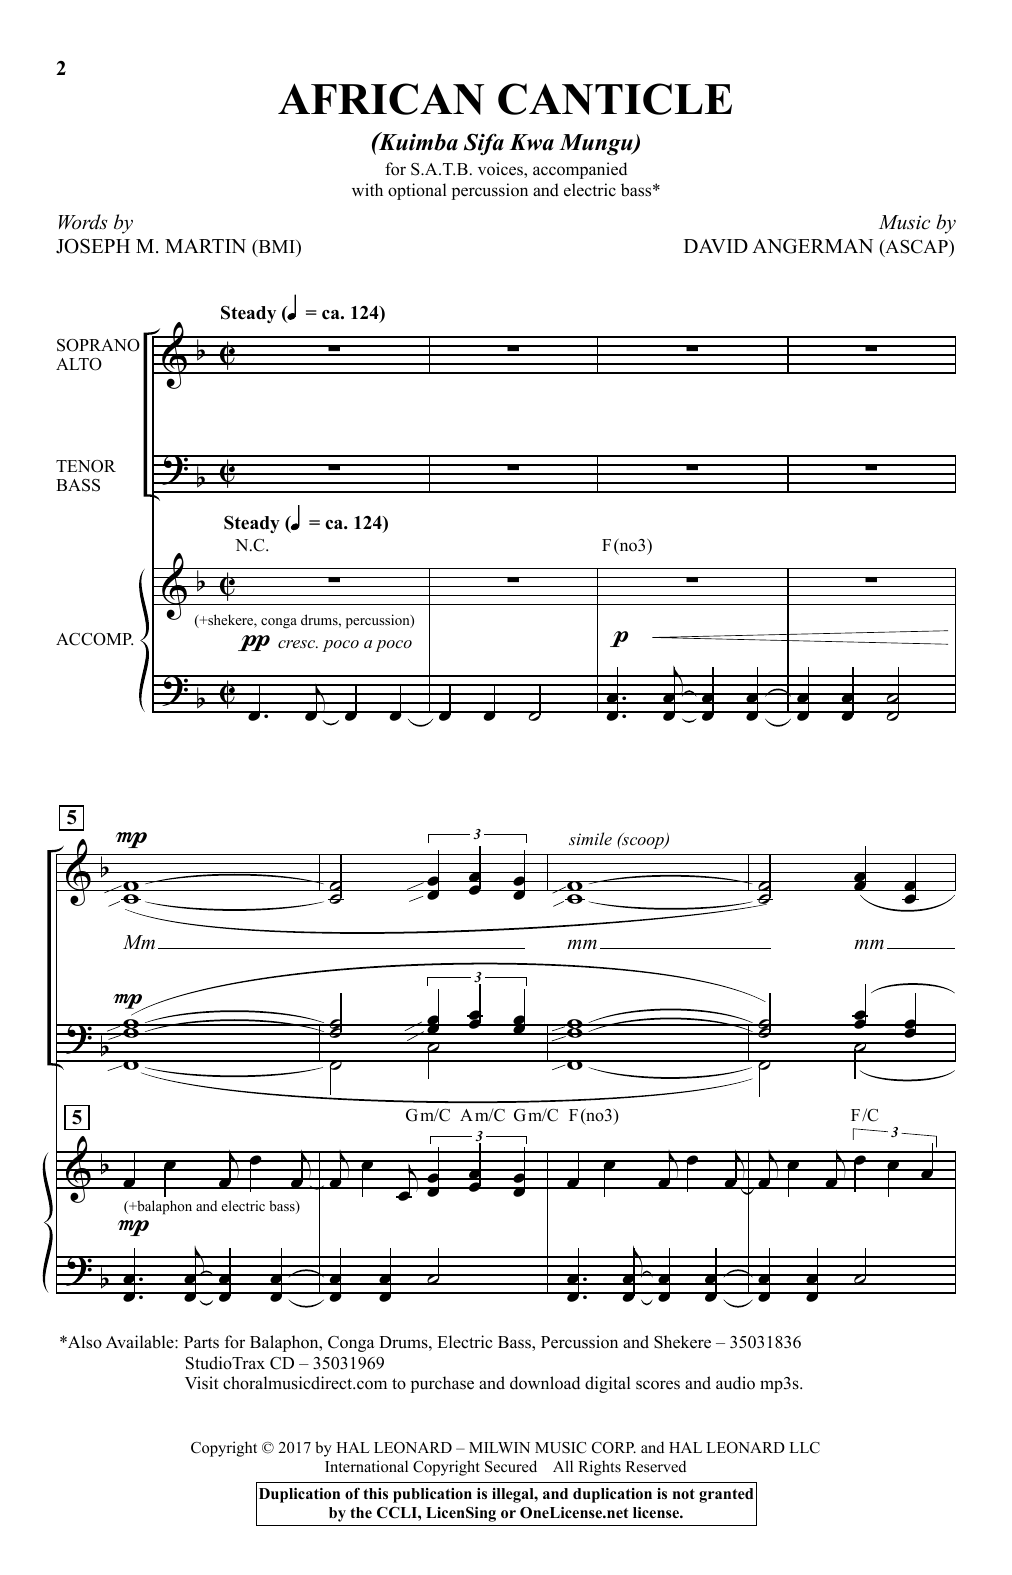 David Angerman African Canticle (Kuimba Sifa Kwa Mungu) Sheet Music Notes & Chords for SATB - Download or Print PDF